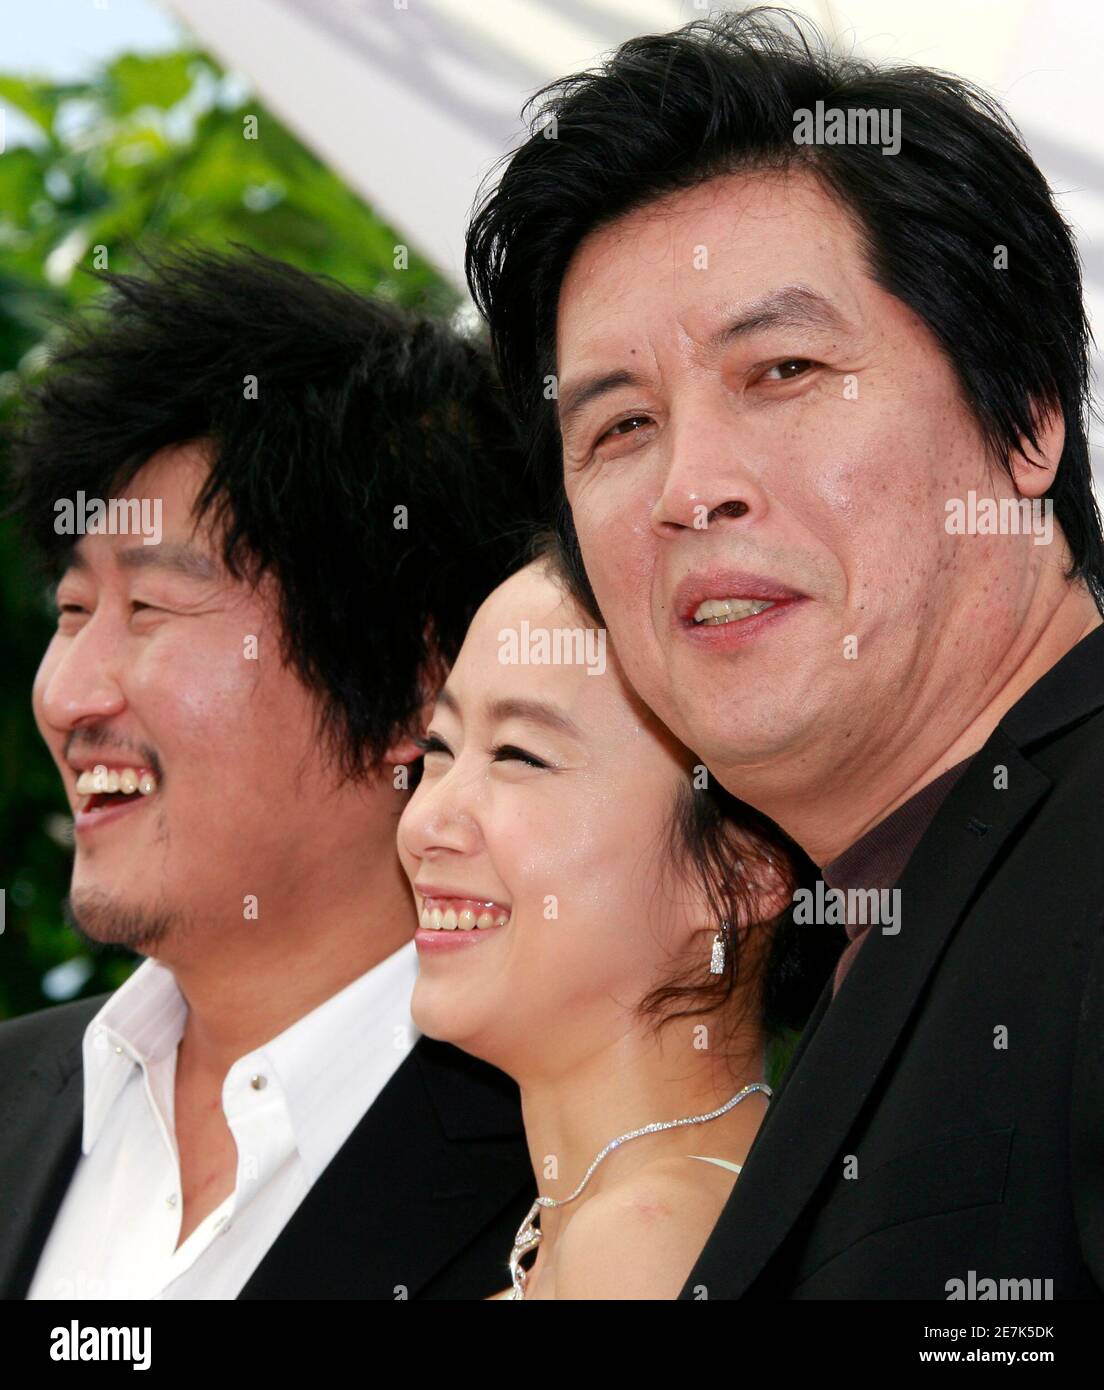 Song Kang-ho (L), Jeon do-yeon (C) et Lee Chang-dong, réalisateur sud-coréen, posent lors d'une séance photo pour le film du réalisateur « Sécret Sunshine » au 60ème Festival de Cannes, le 24 mai 2007. REUTERS/Eric Gaillard (FRANCE) Banque D'Images